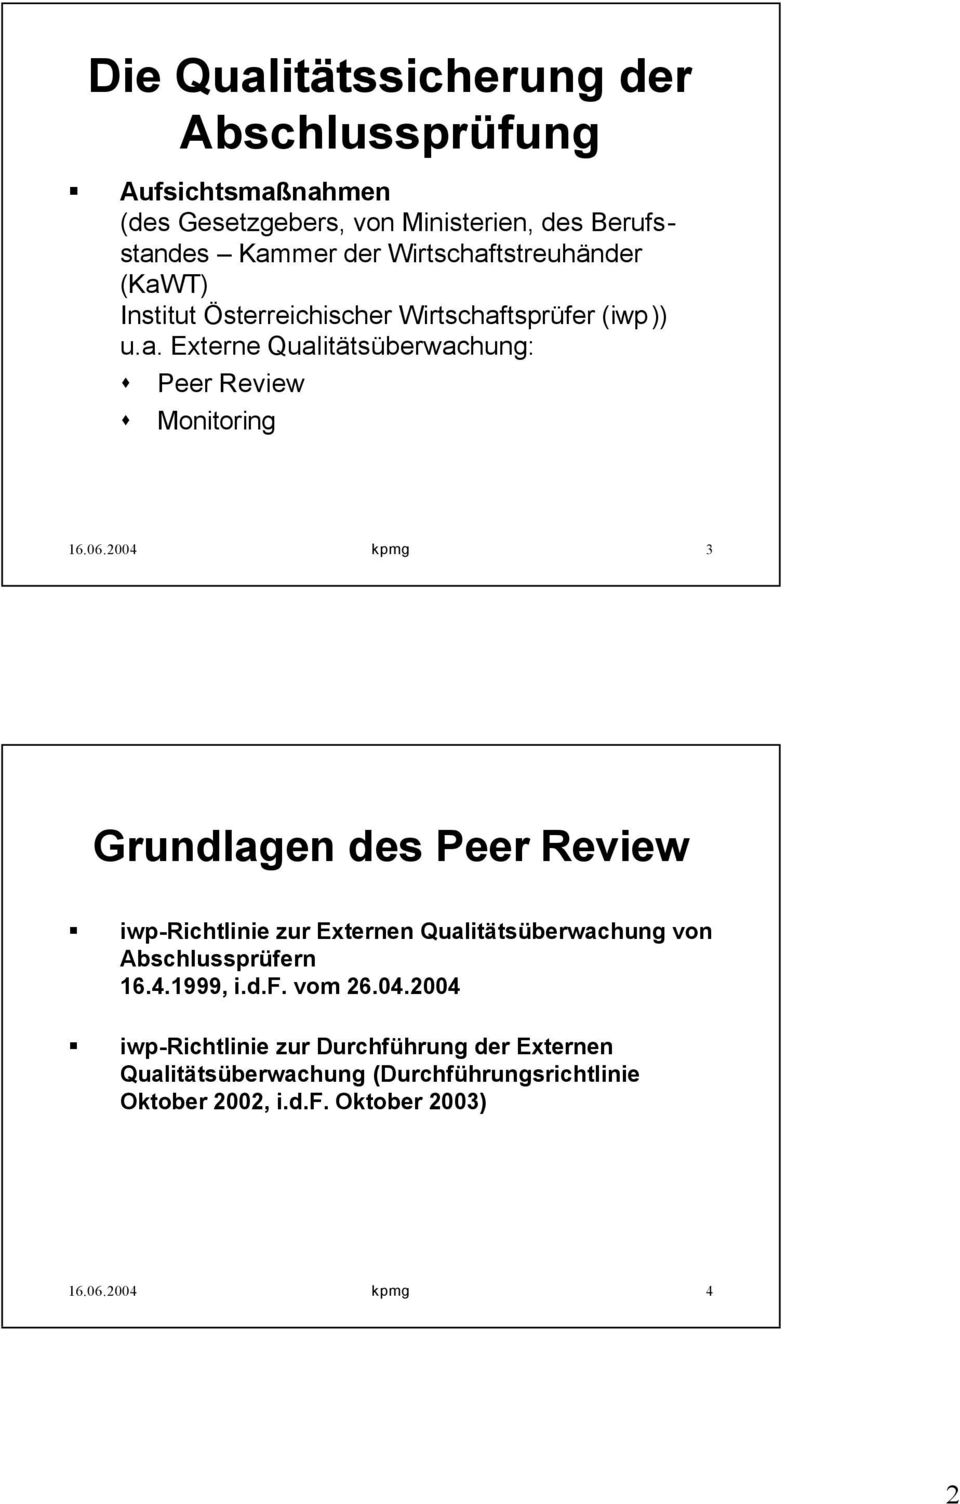 06.2004 kpmg 3 Grundlagen des Peer Review iwp-richtlinie zur Externen Qualitätsüberwachung von Abschlussprüfern 16.4.1999, i.d.f. vom 26.04.2004 iwp-richtlinie zur Durchführung der Externen Qualitätsüberwachung (Durchführungsrichtlinie Oktober 2002, i.